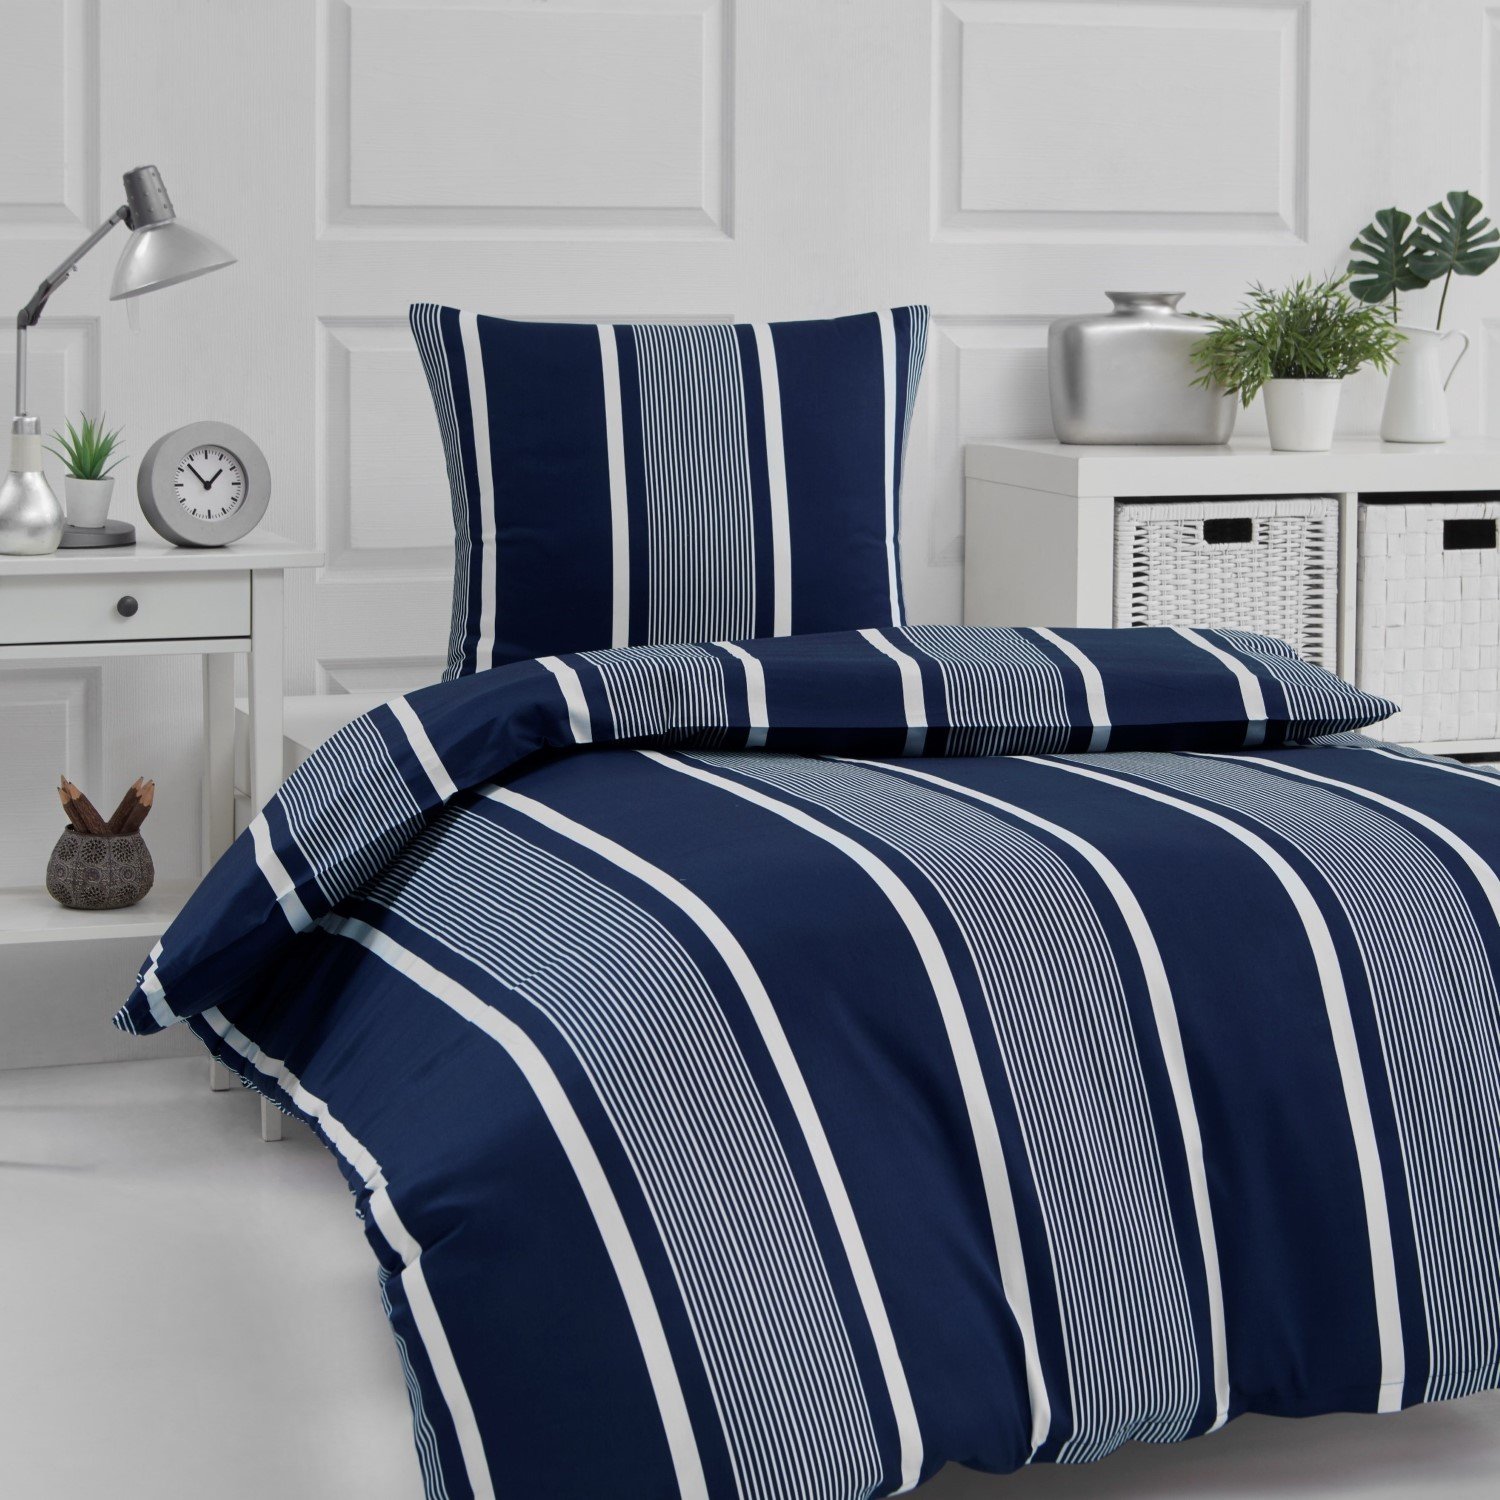 Individualitet rent højen Skagen sengetøj med mørkeblå striber - 100% bomuldssatin